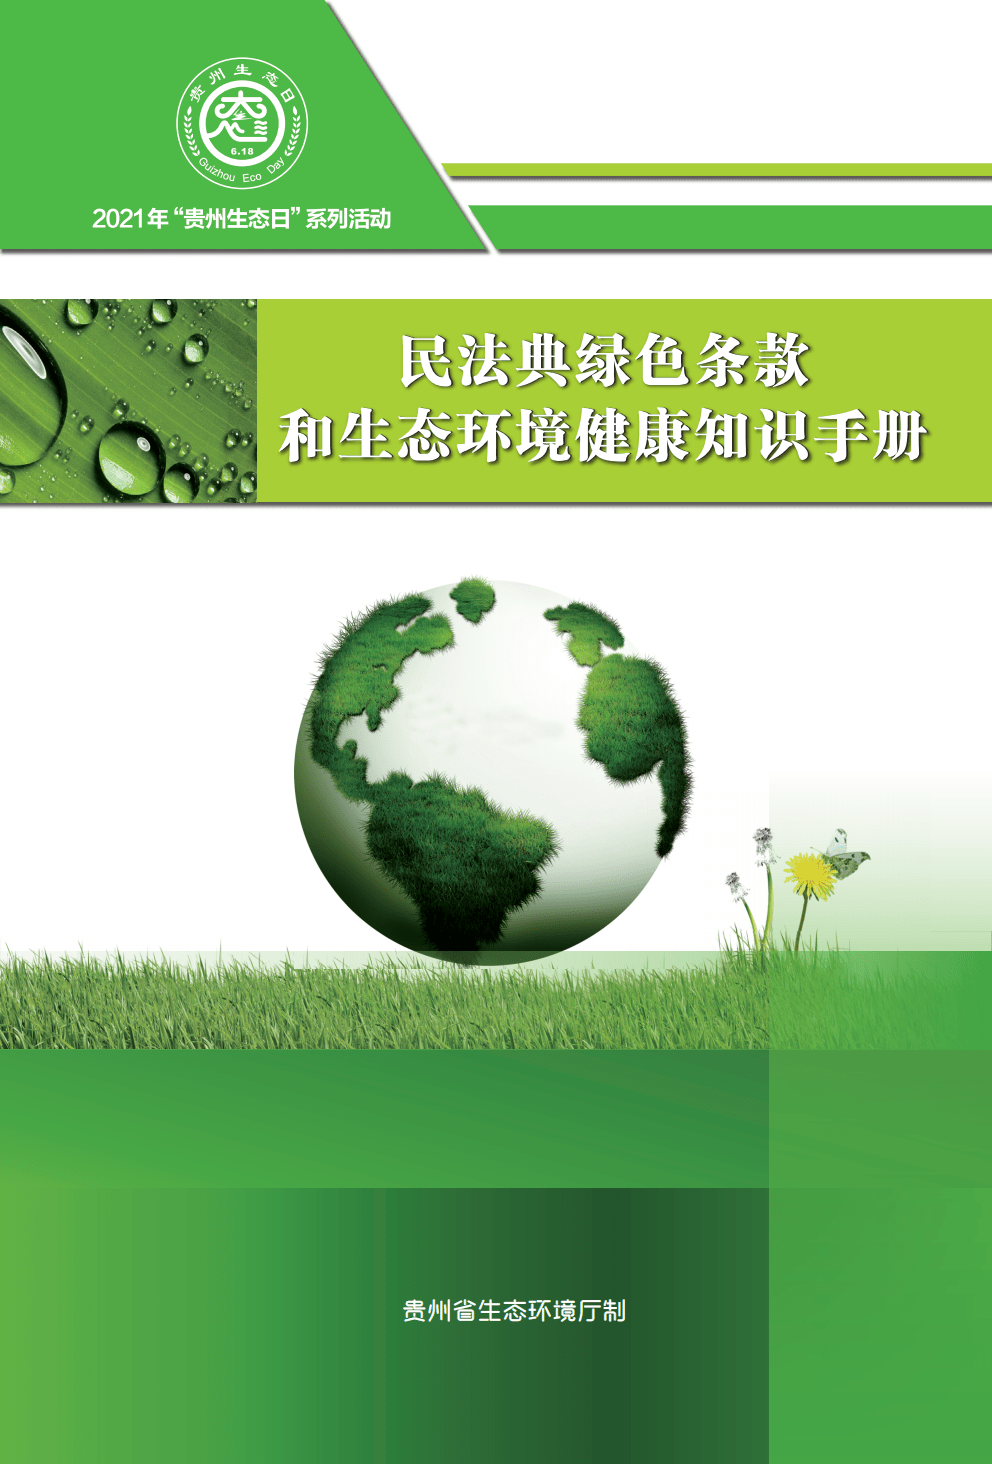 民法典绿色条款和生态环境健康知识手册 ‖ 章节三 中国公民生态环境